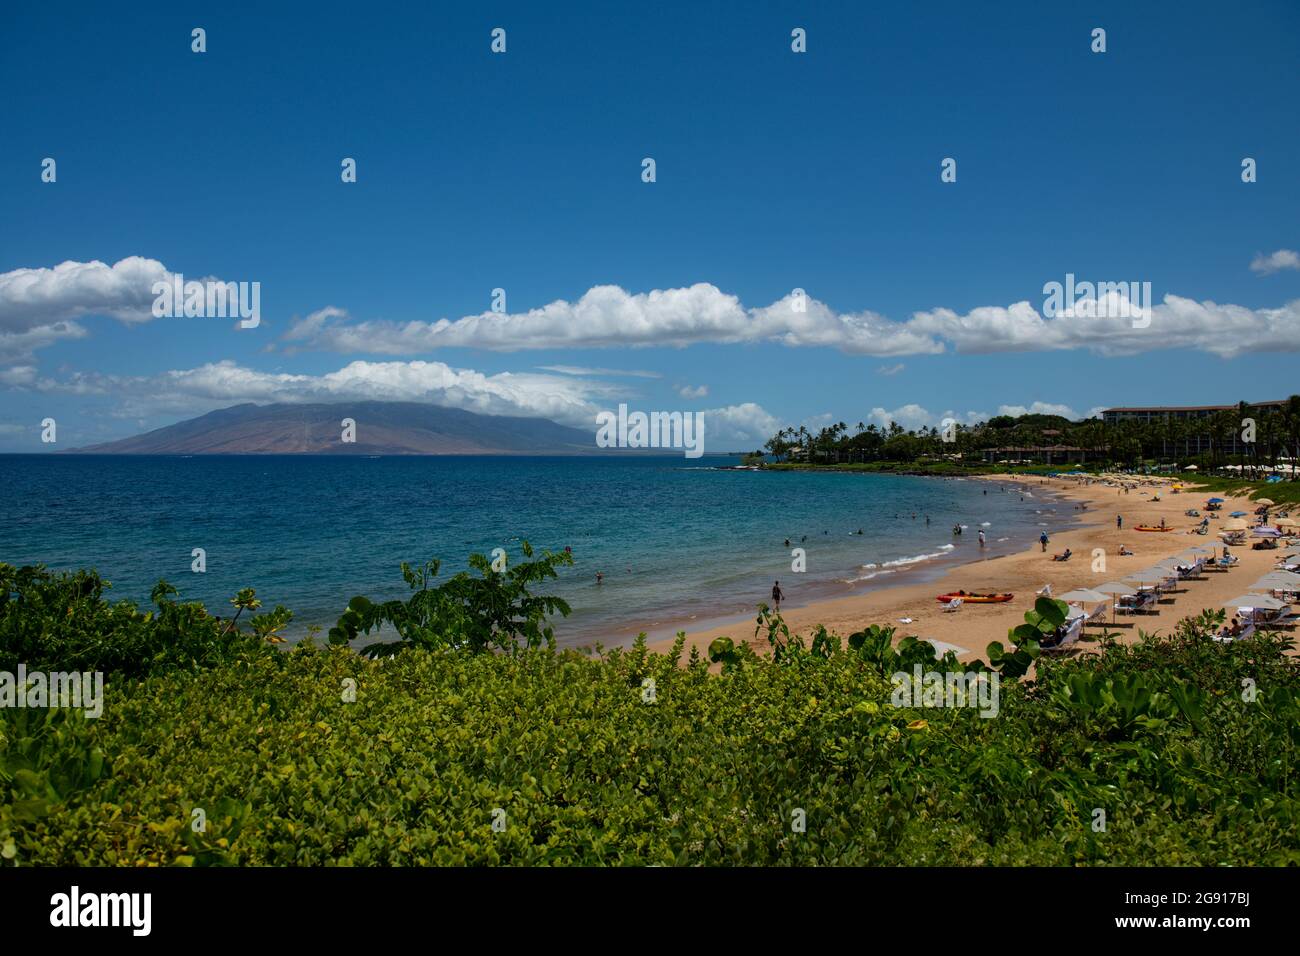 Beach on the Island of Maui, Aloha Hawaii Stock Photo